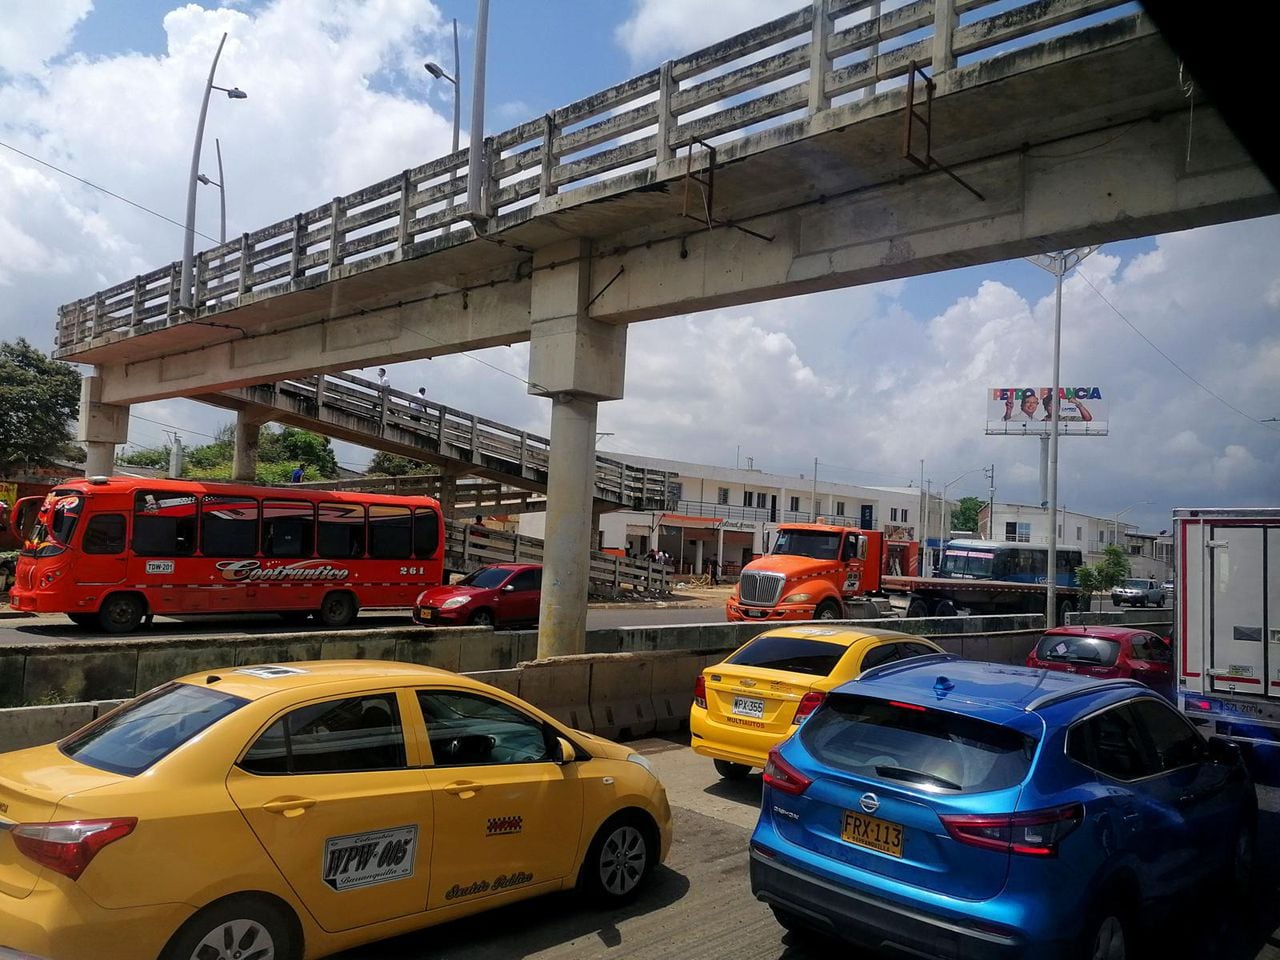 Evitar una multa es la prioridad este lunes 5 de febrero en Barranquilla, donde las restricciones de pico y placa estarán rigiendo para mejorar la movilidad.